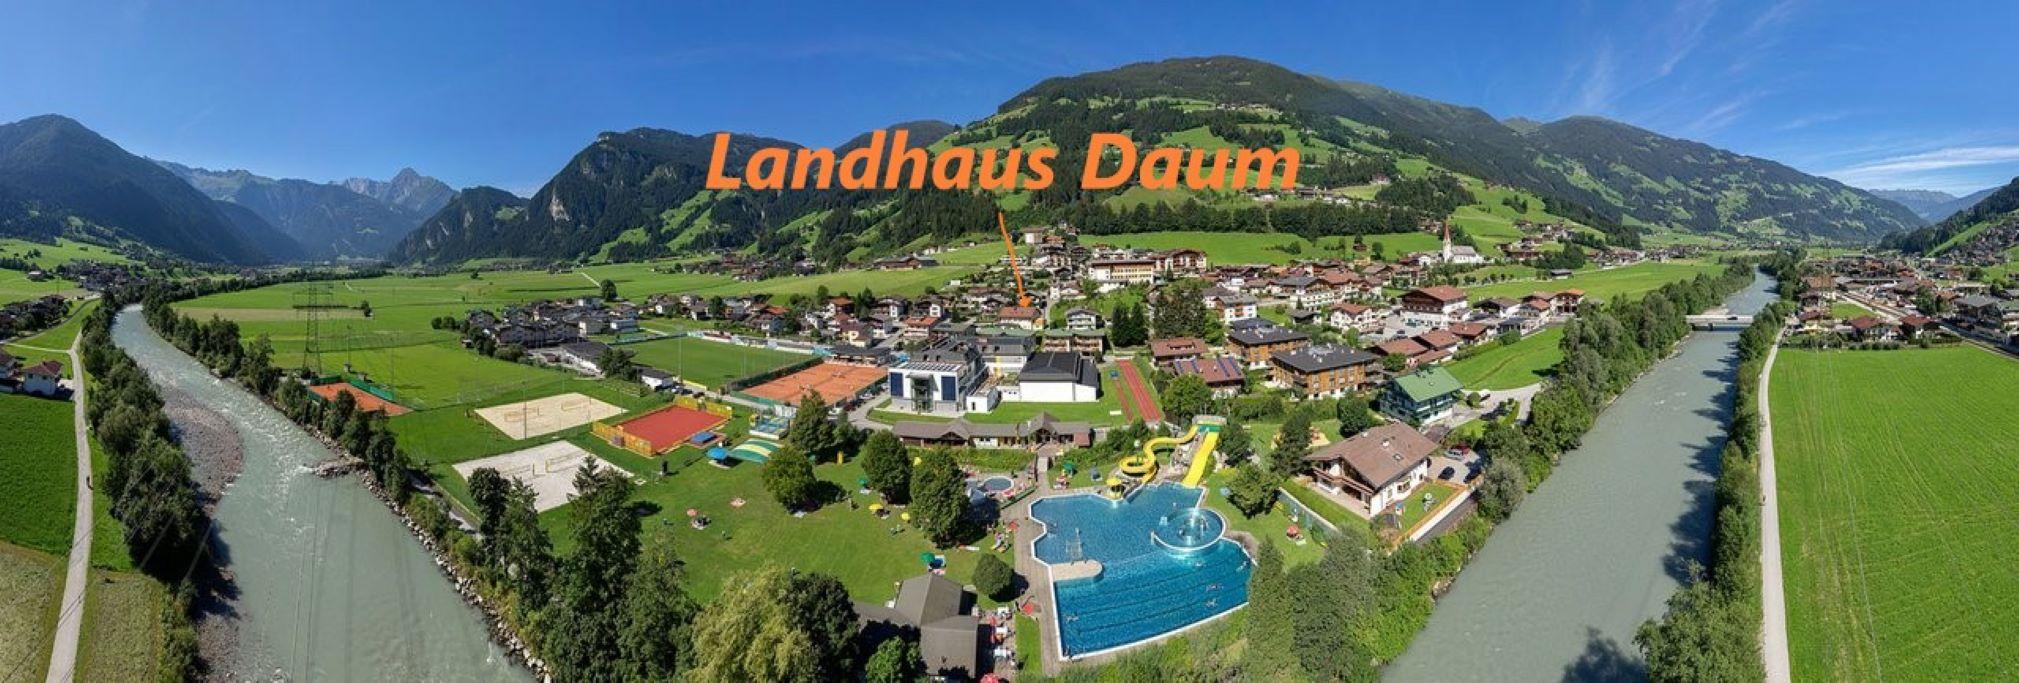 Landhaus Daum